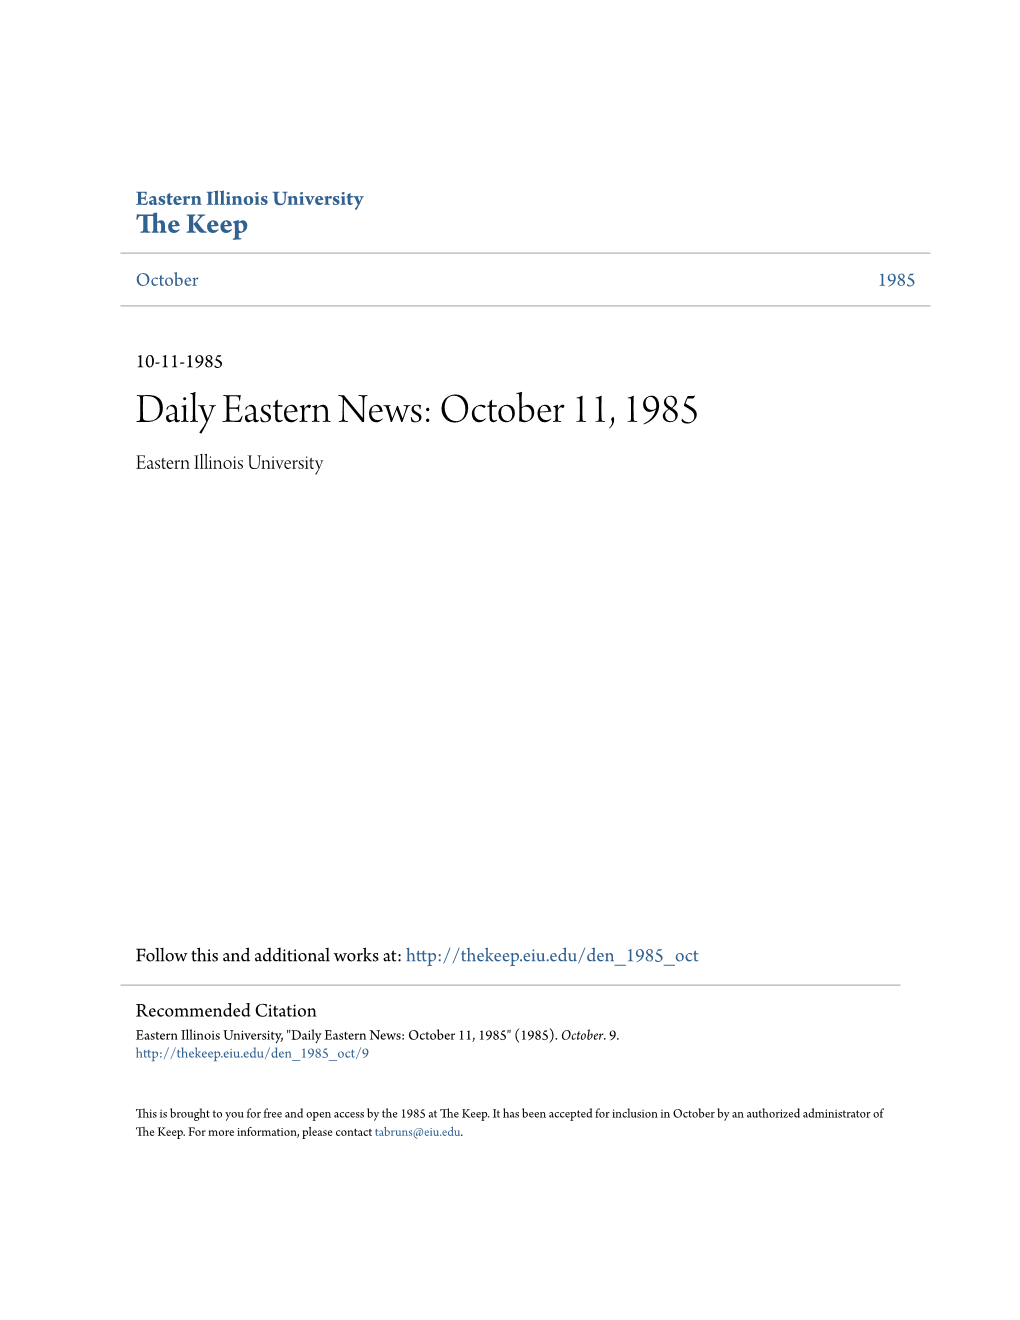 October 11, 1985 Eastern Illinois University